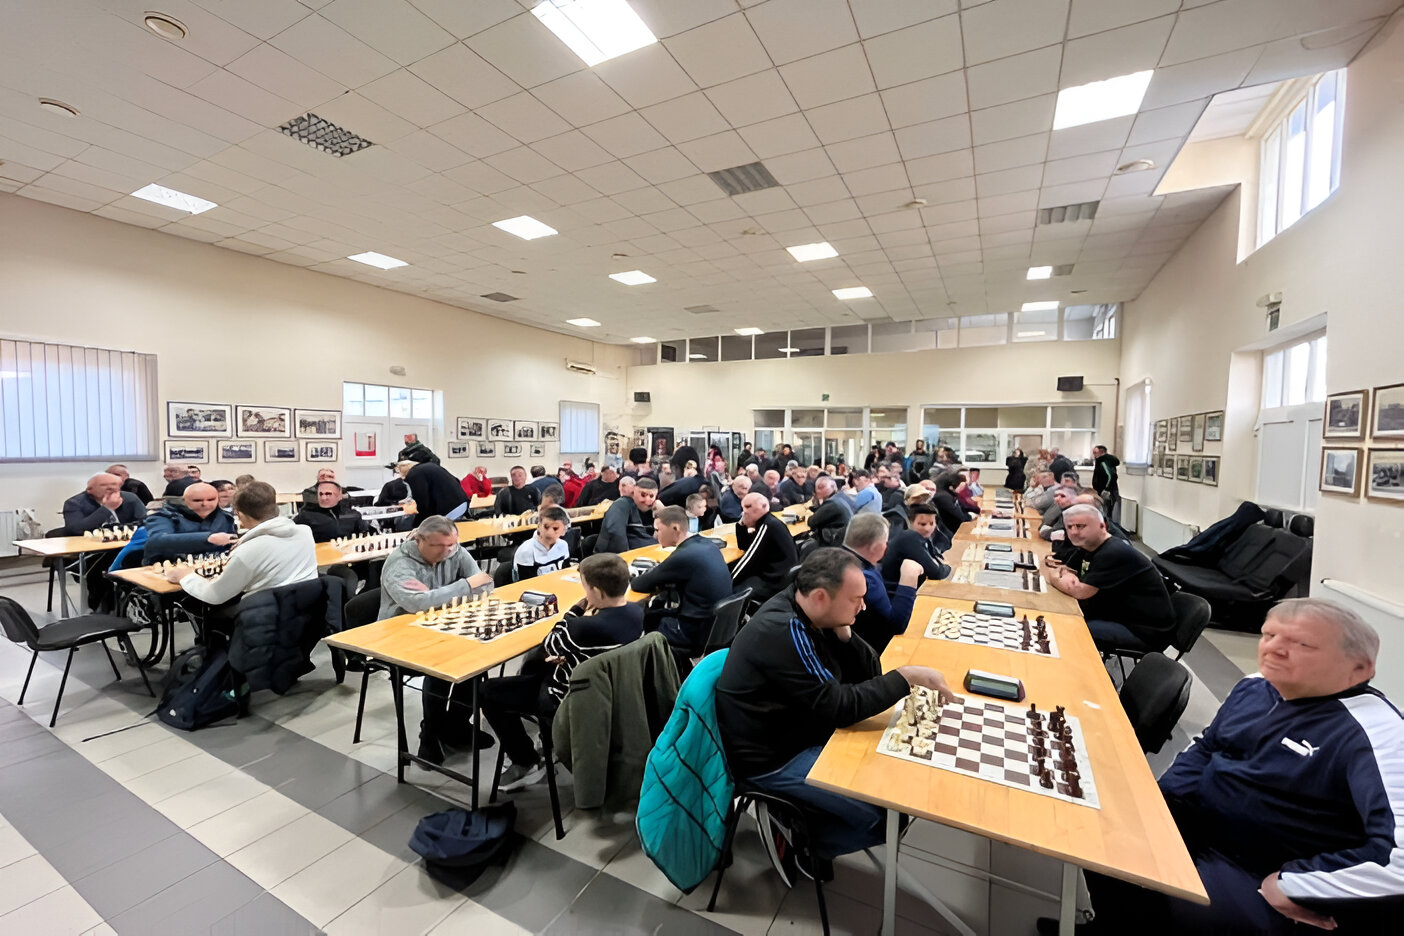 Ova slika prikazuje prostoriju u kojoj se održava šahovski turnir. Mnogi igrači sjede za dugim stolovima, a svaki stol ima šahovsku ploču. Prostorija je prostrana i dobro osvijetljena, s nekoliko prozora na zidu.